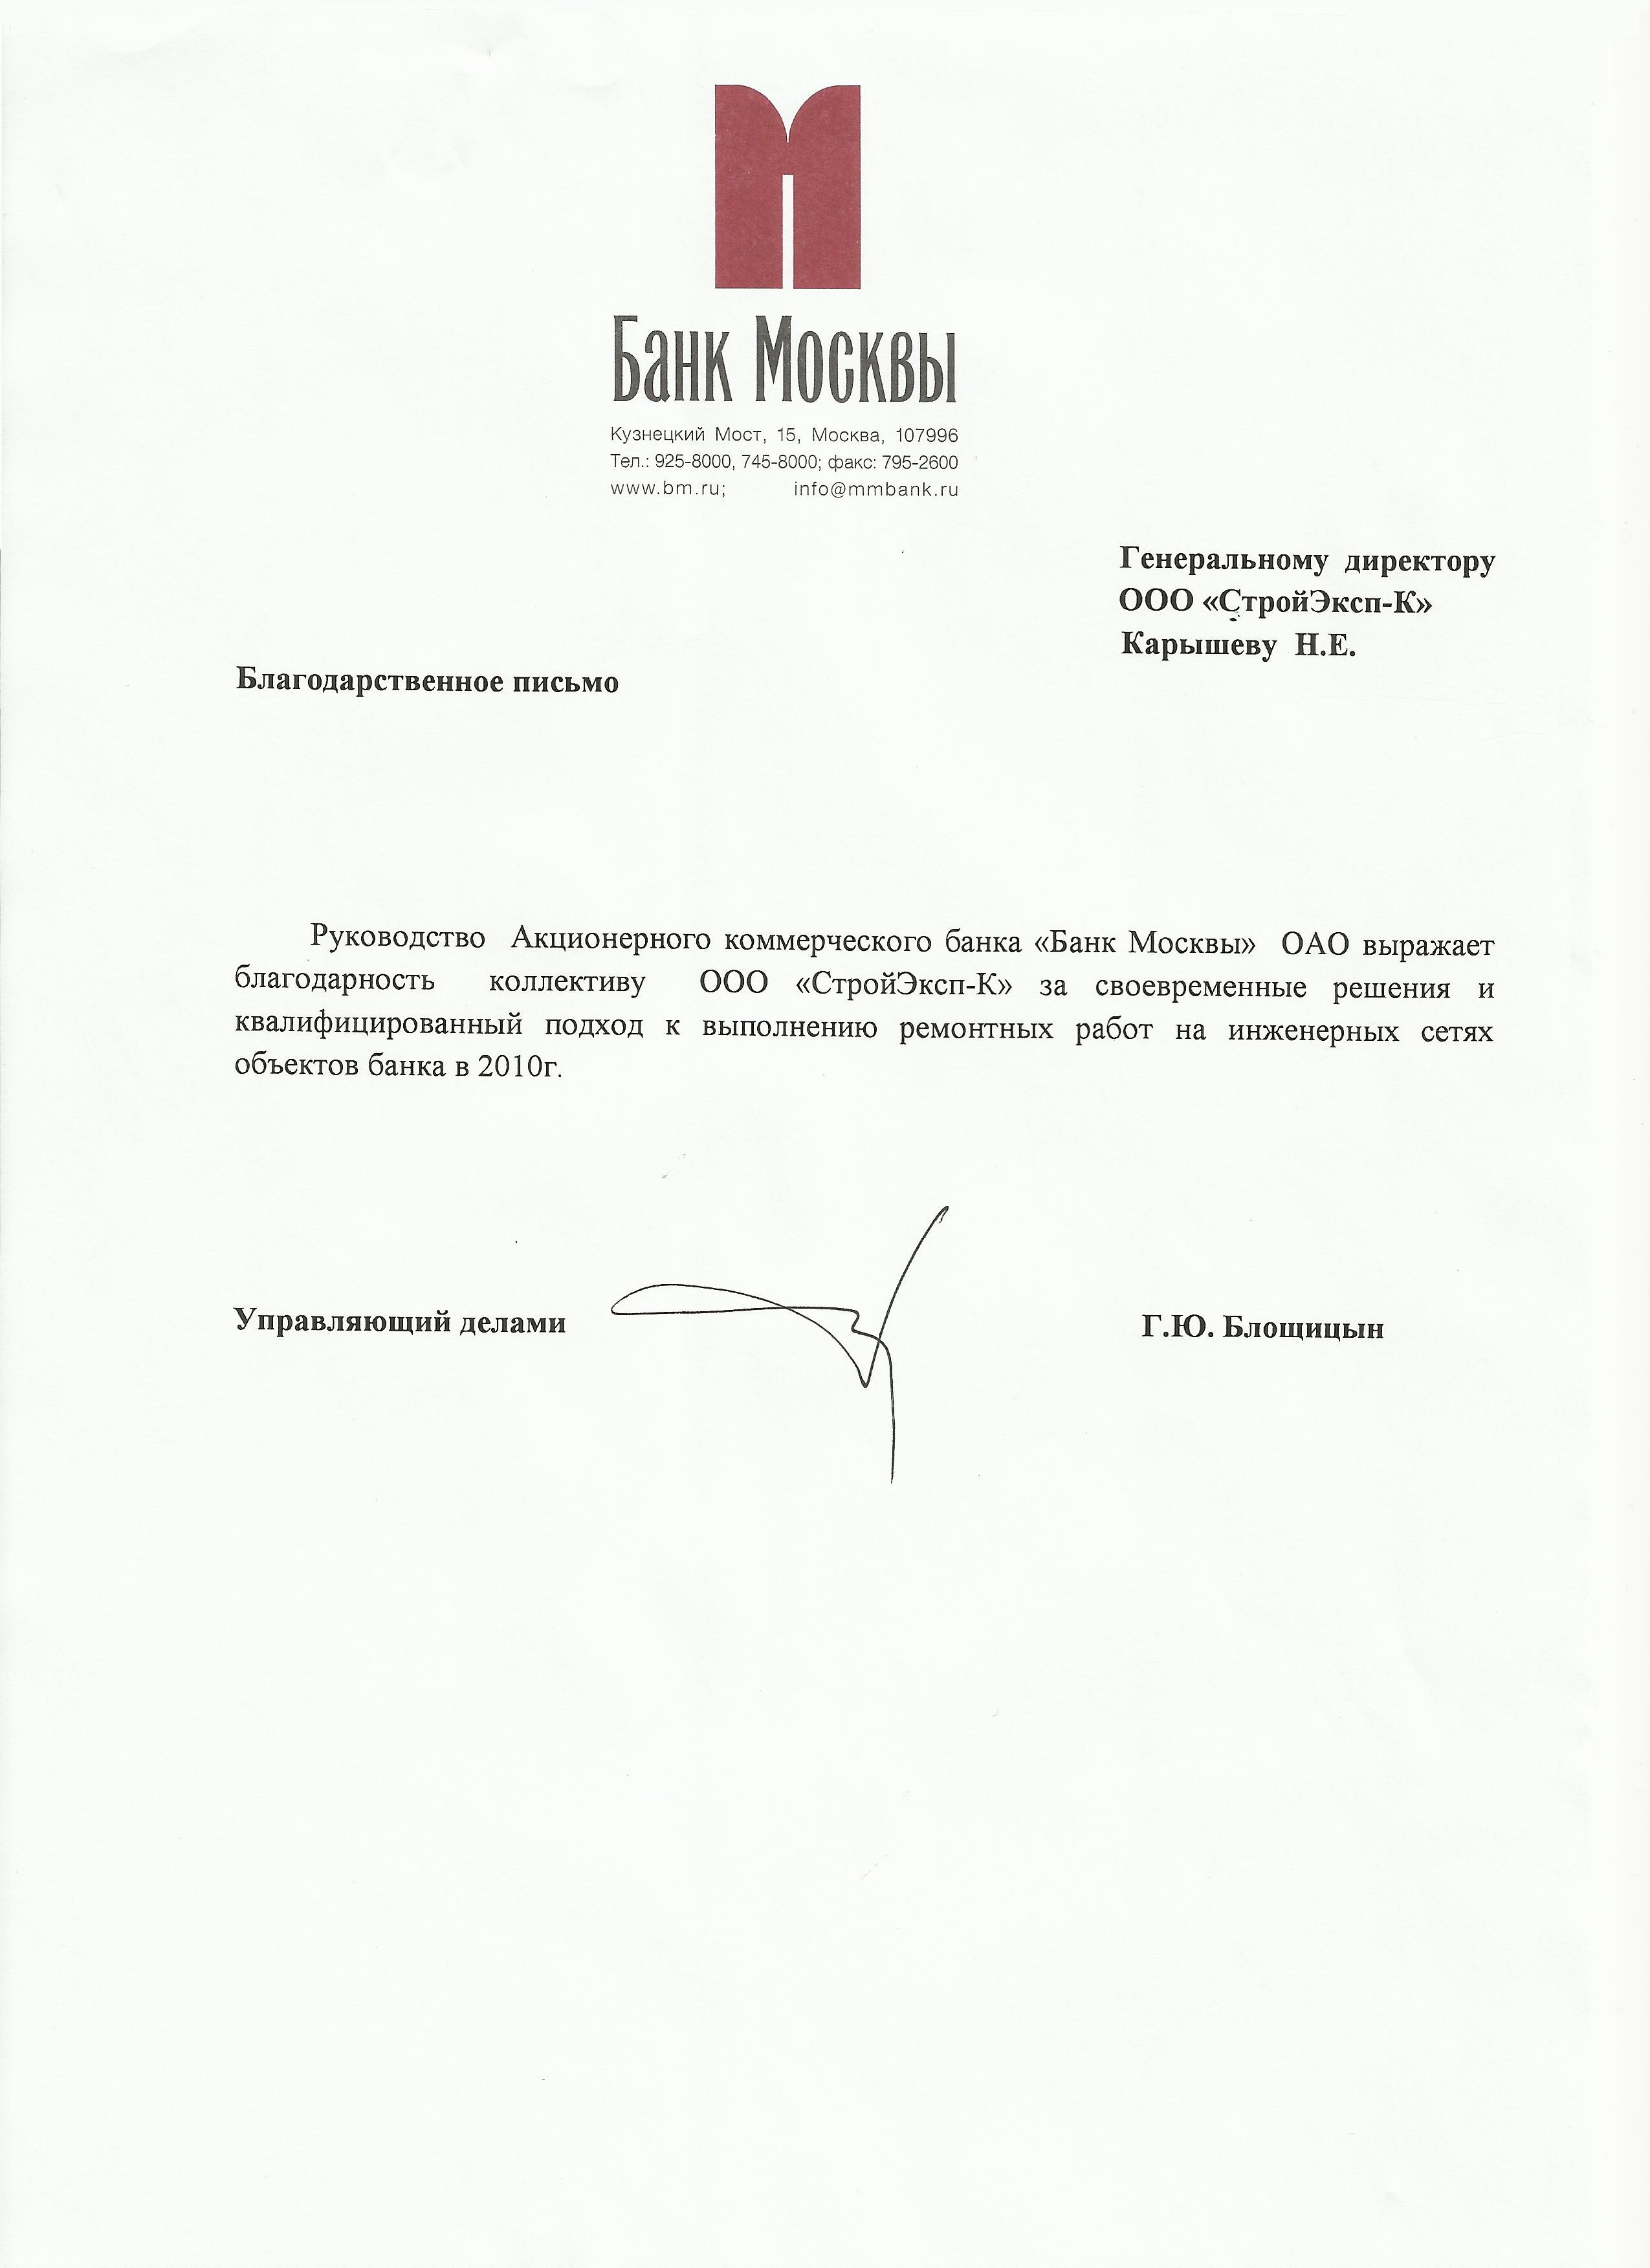 Благодарственное письмо от Банка Москвы